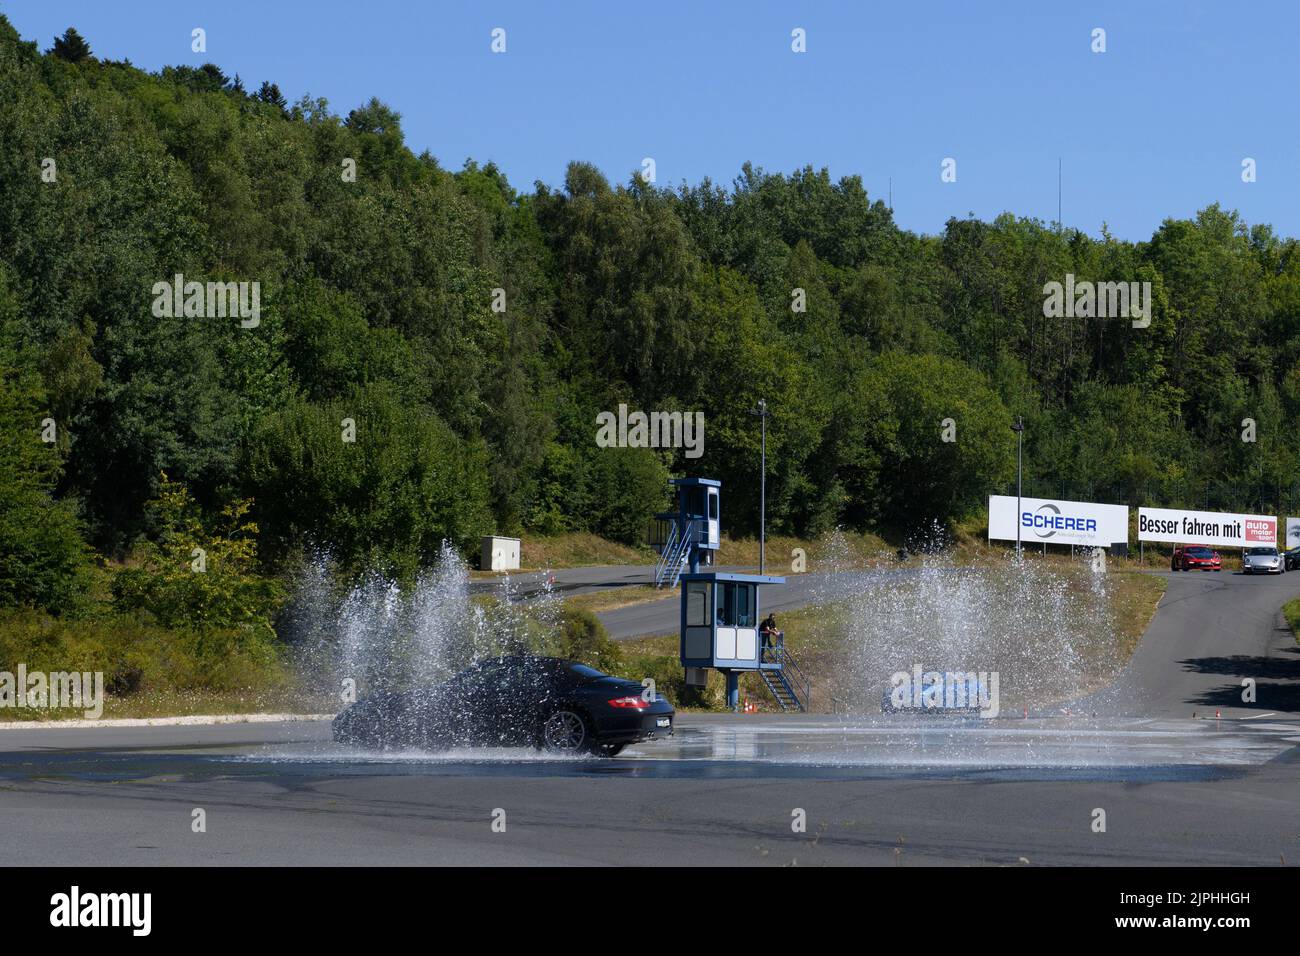 Porsche 911 bei Fahrsicherheitstraining, schleudert in Wasserfontäne, Fahrsicherheitszentrum, Nürburgring, Rheinland-Pfalz, Deutschland, Europa Stock Photo